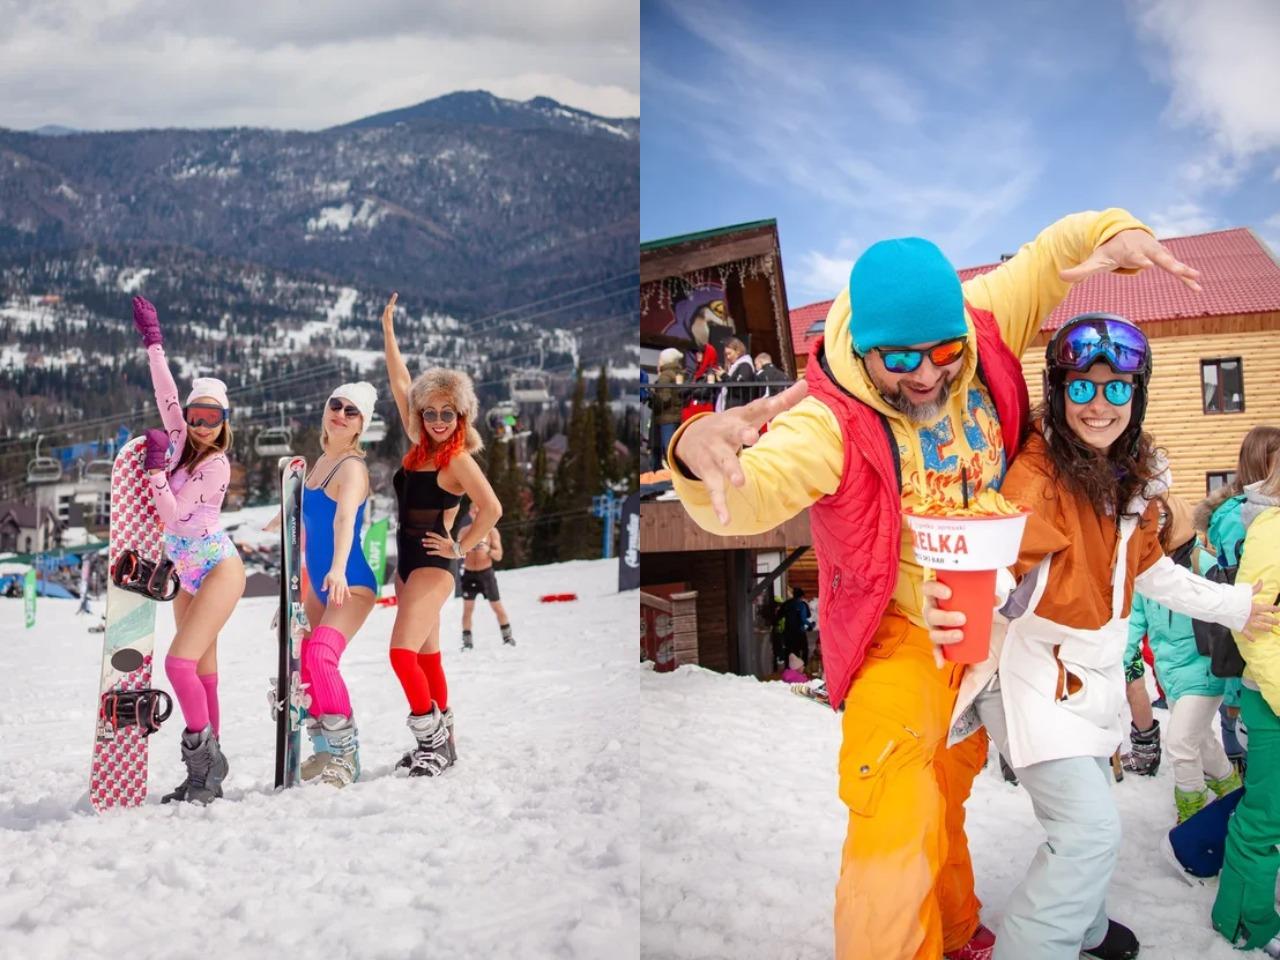 Фото «Горячее не бывает»: 15 самых красивых лыжниц в купальниках с фестиваля в Шерегеше 9